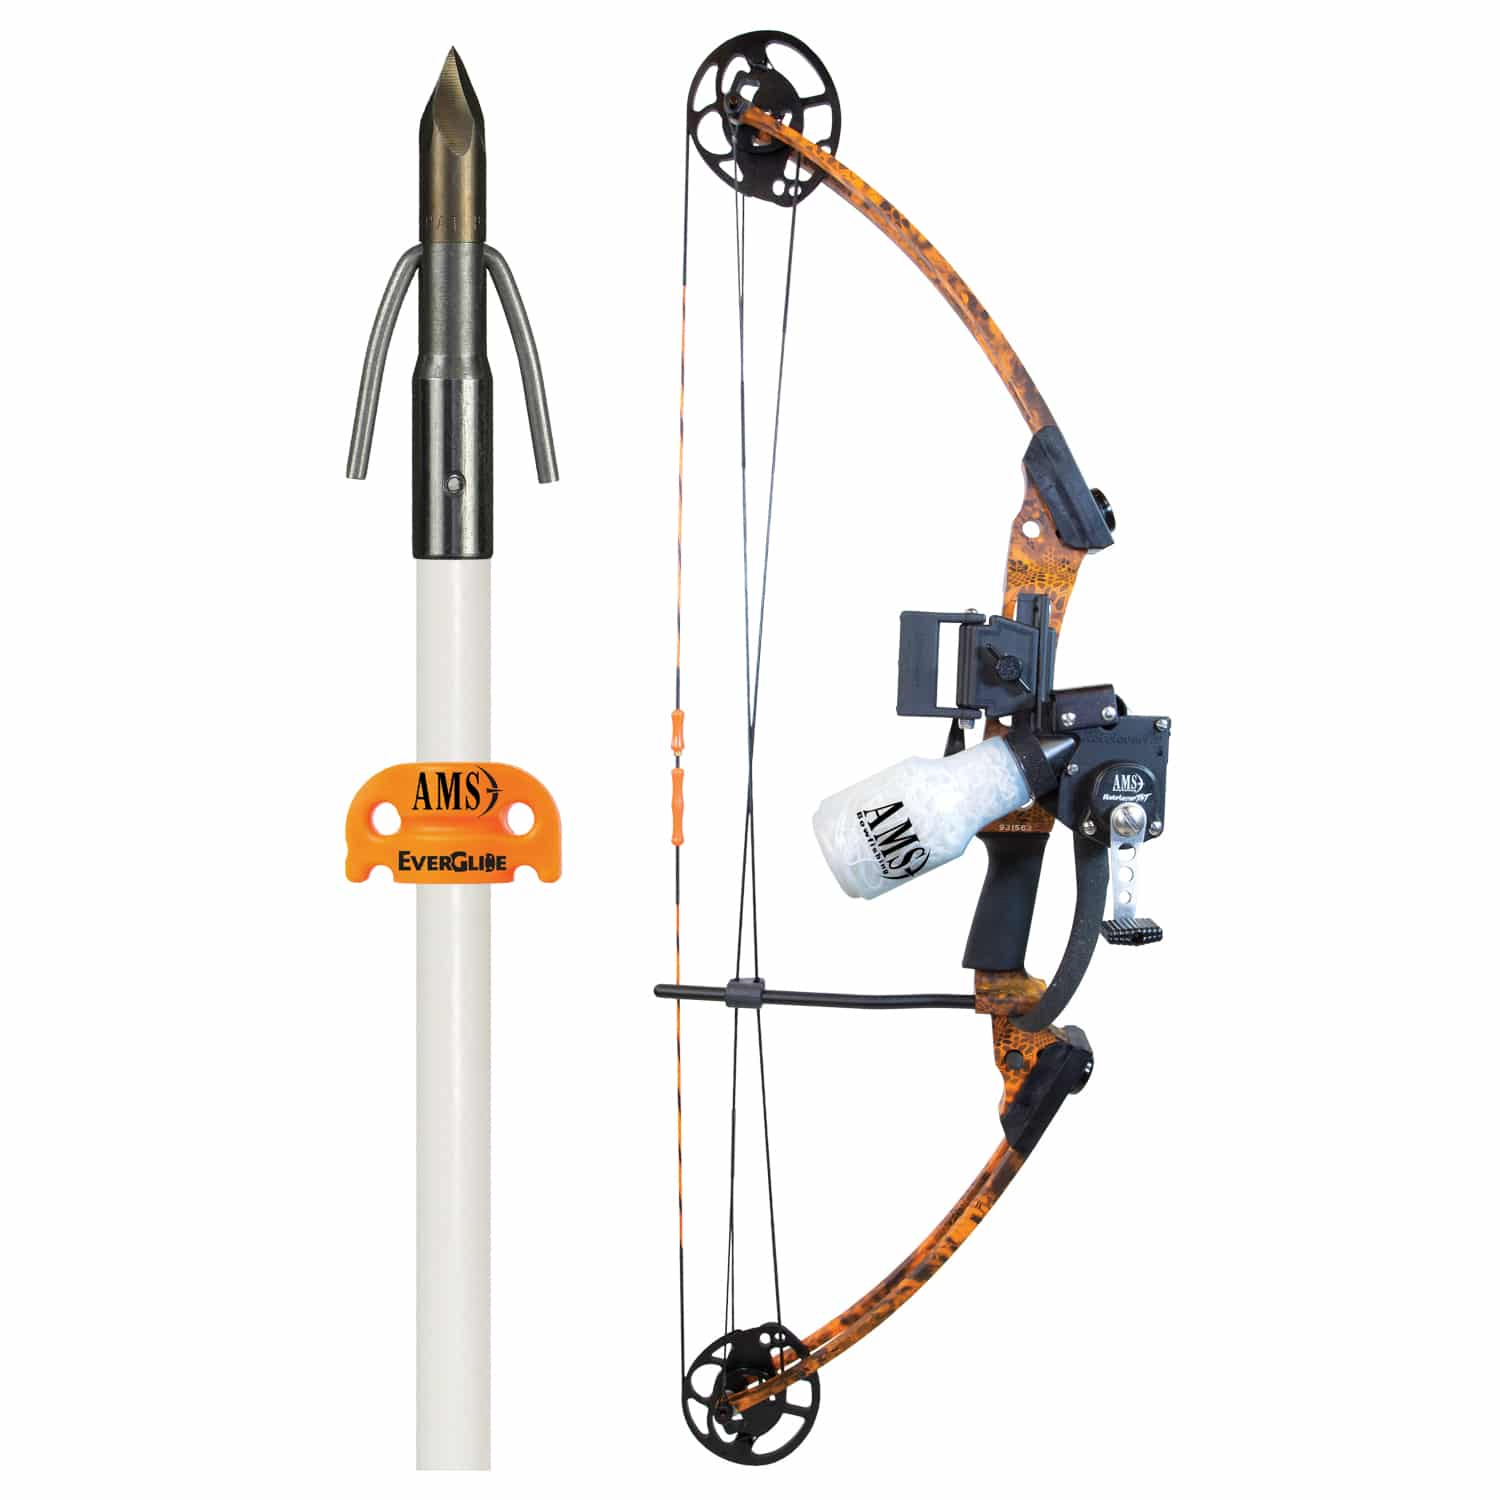 Bowfishing –Kits – Reel & Arrow Kits – Cajan Bowfishing